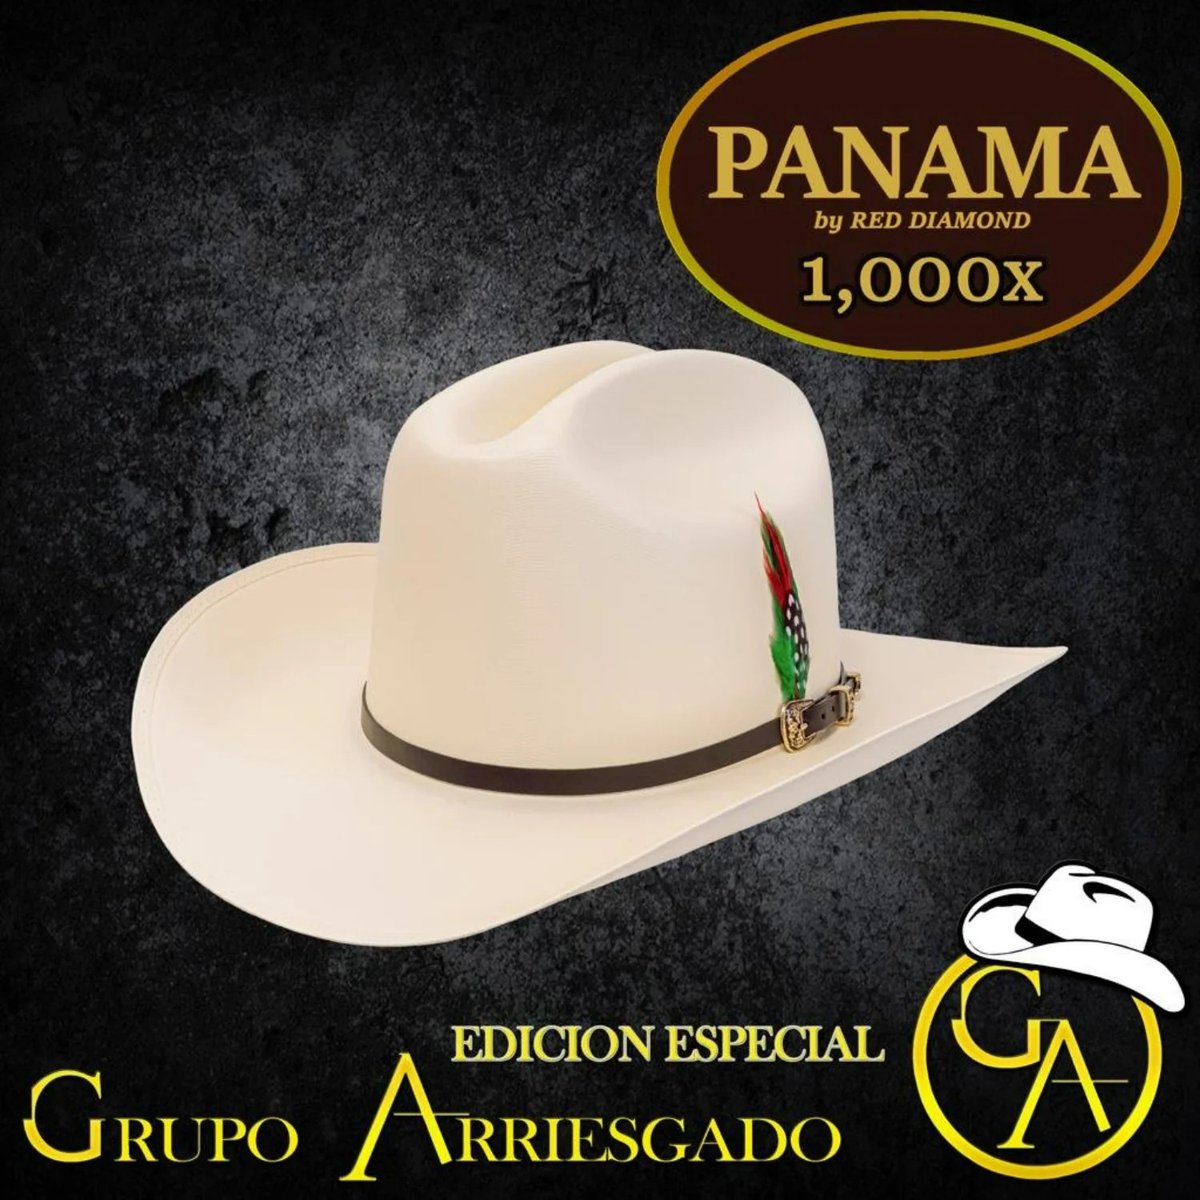 Sombrero Panama 1,000X Estilo El Panter Belico $249.99 con ENVIO GRATIS. Para comprar llama al 323-312-3317 o haz click en este link: caballobronco.com/collections/so… #caballobronco #texanas #sombreros #sombrerosvaqueros #cowboyhat #sombrerosinaloa #sombreropanama #strawhat #cowboyhat